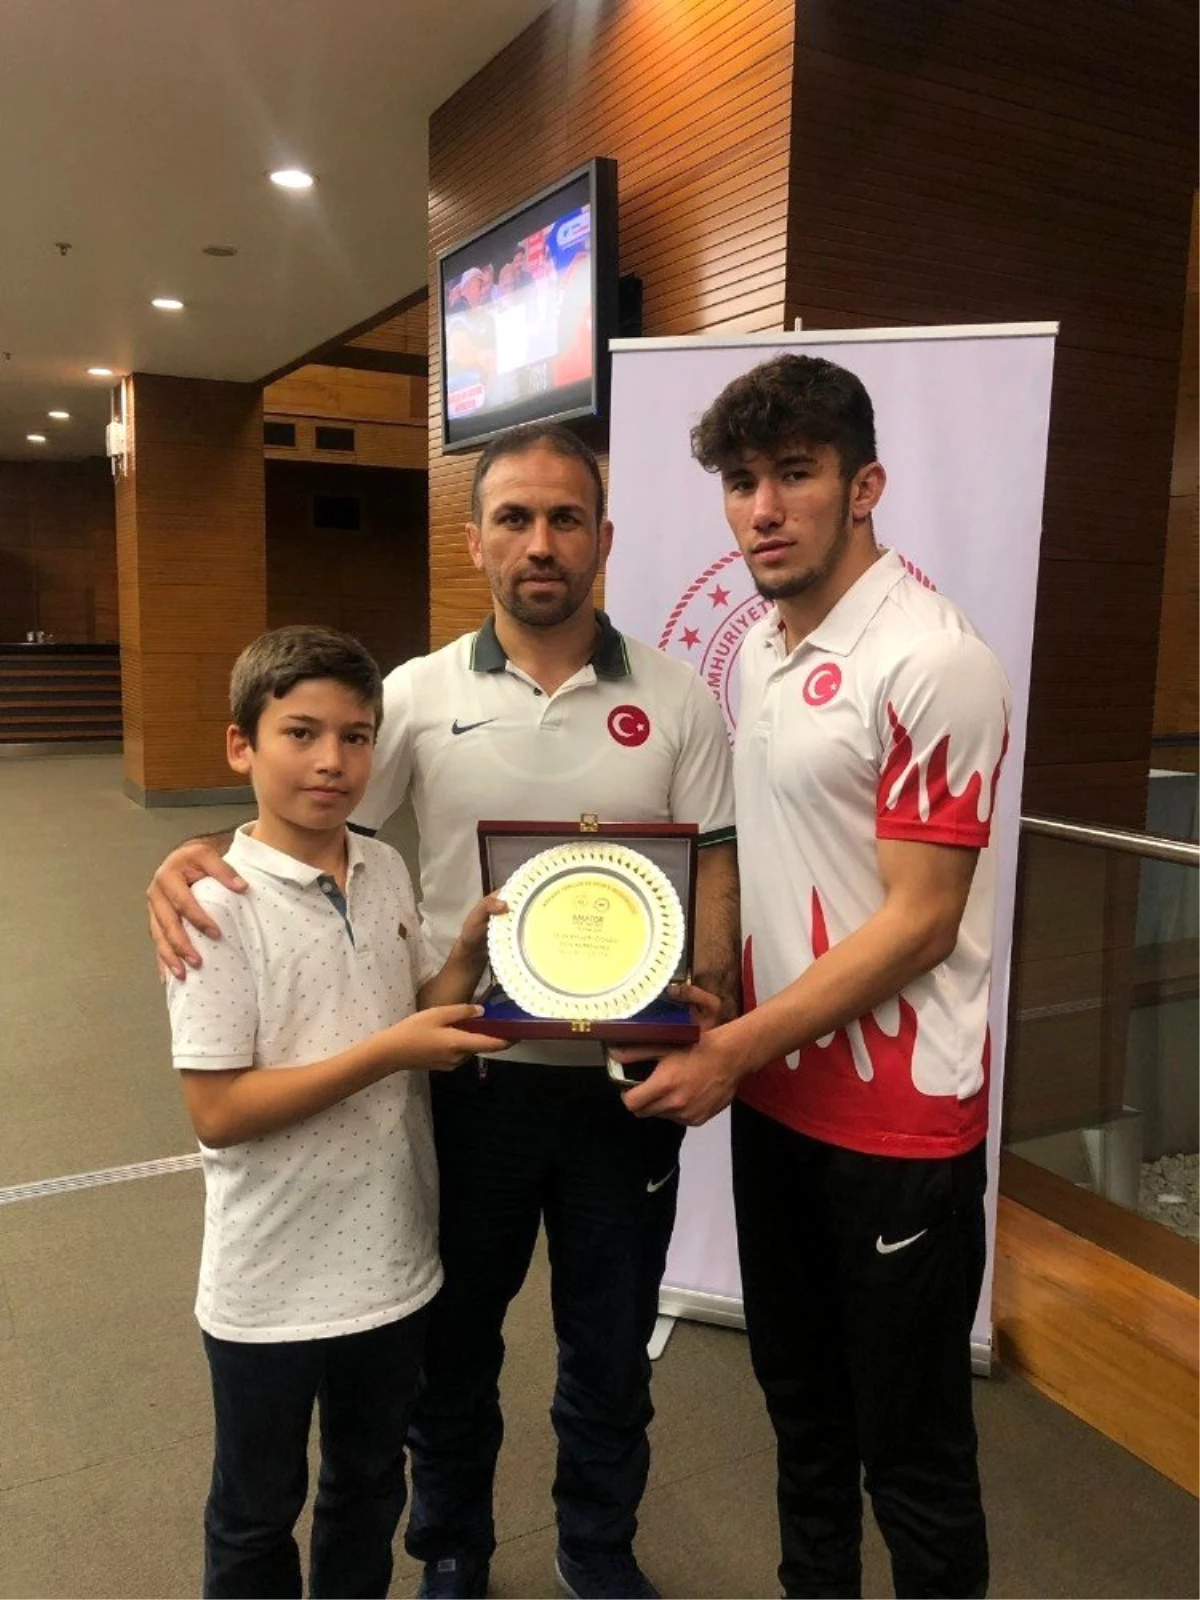 Kızılcahamam Antrenörü 2019 Yılın Antrenörü seçildi